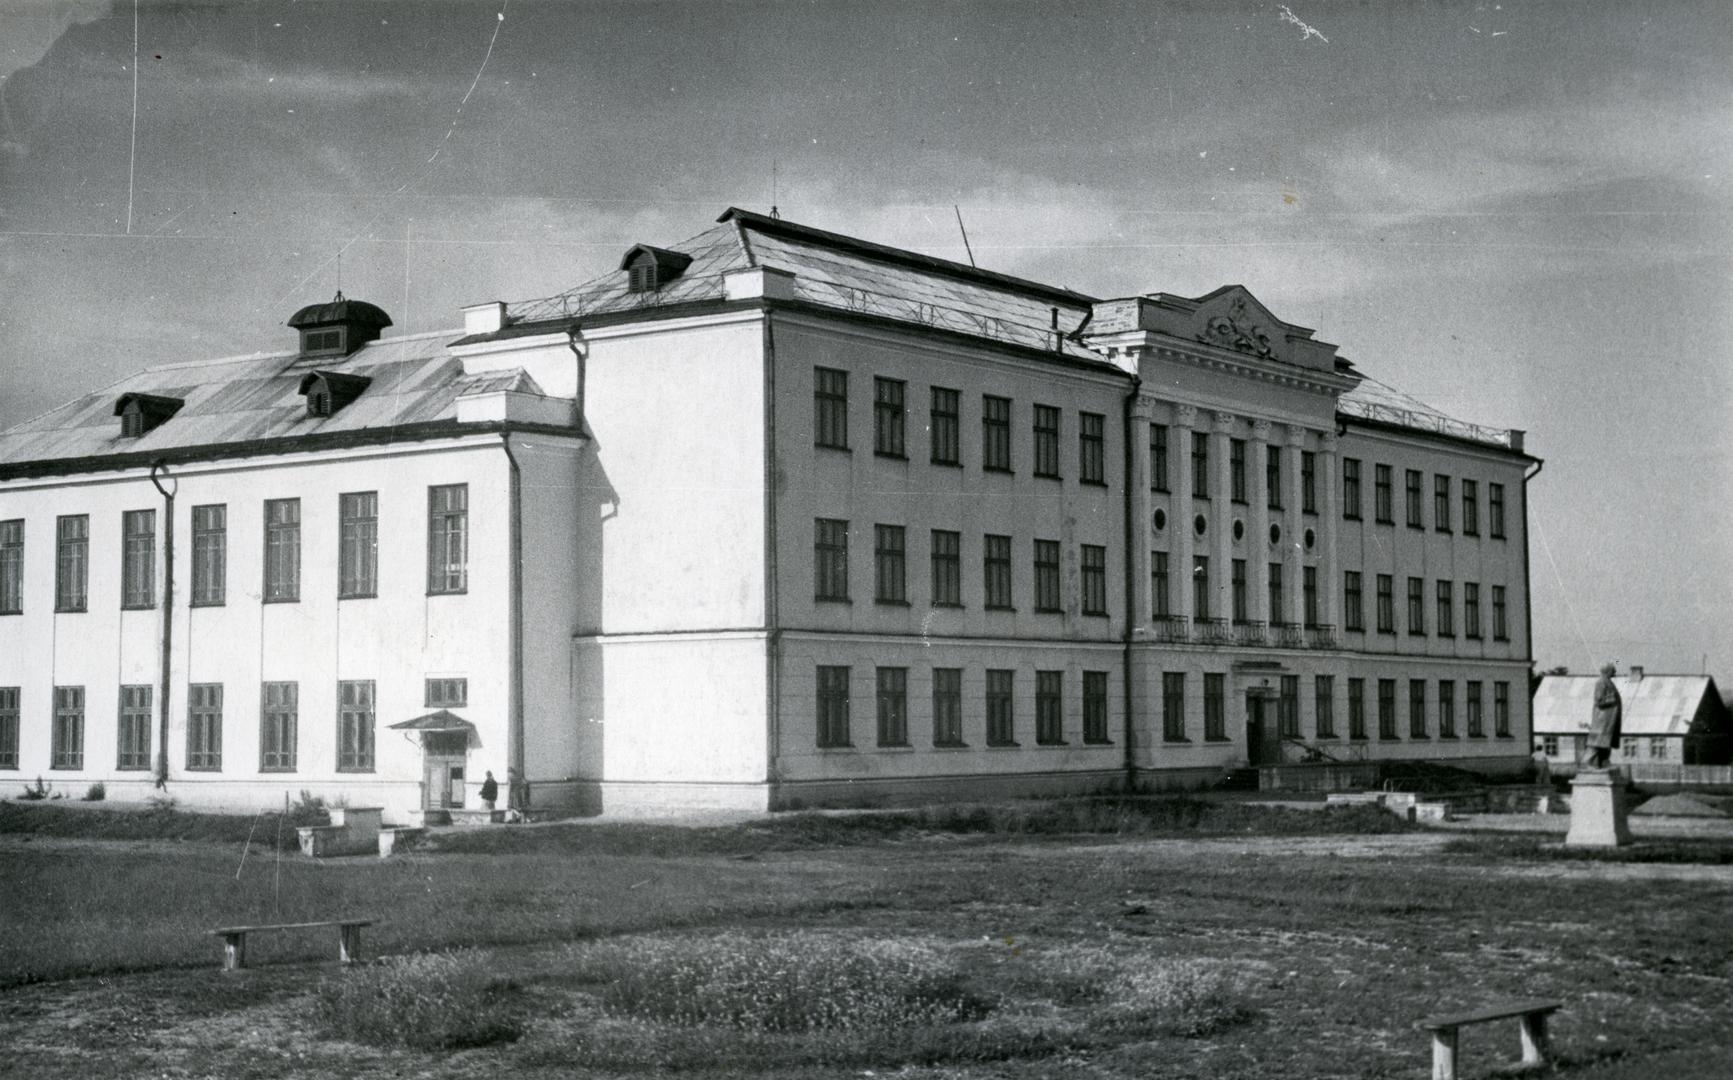 Jõgeva Secondary School building 1955